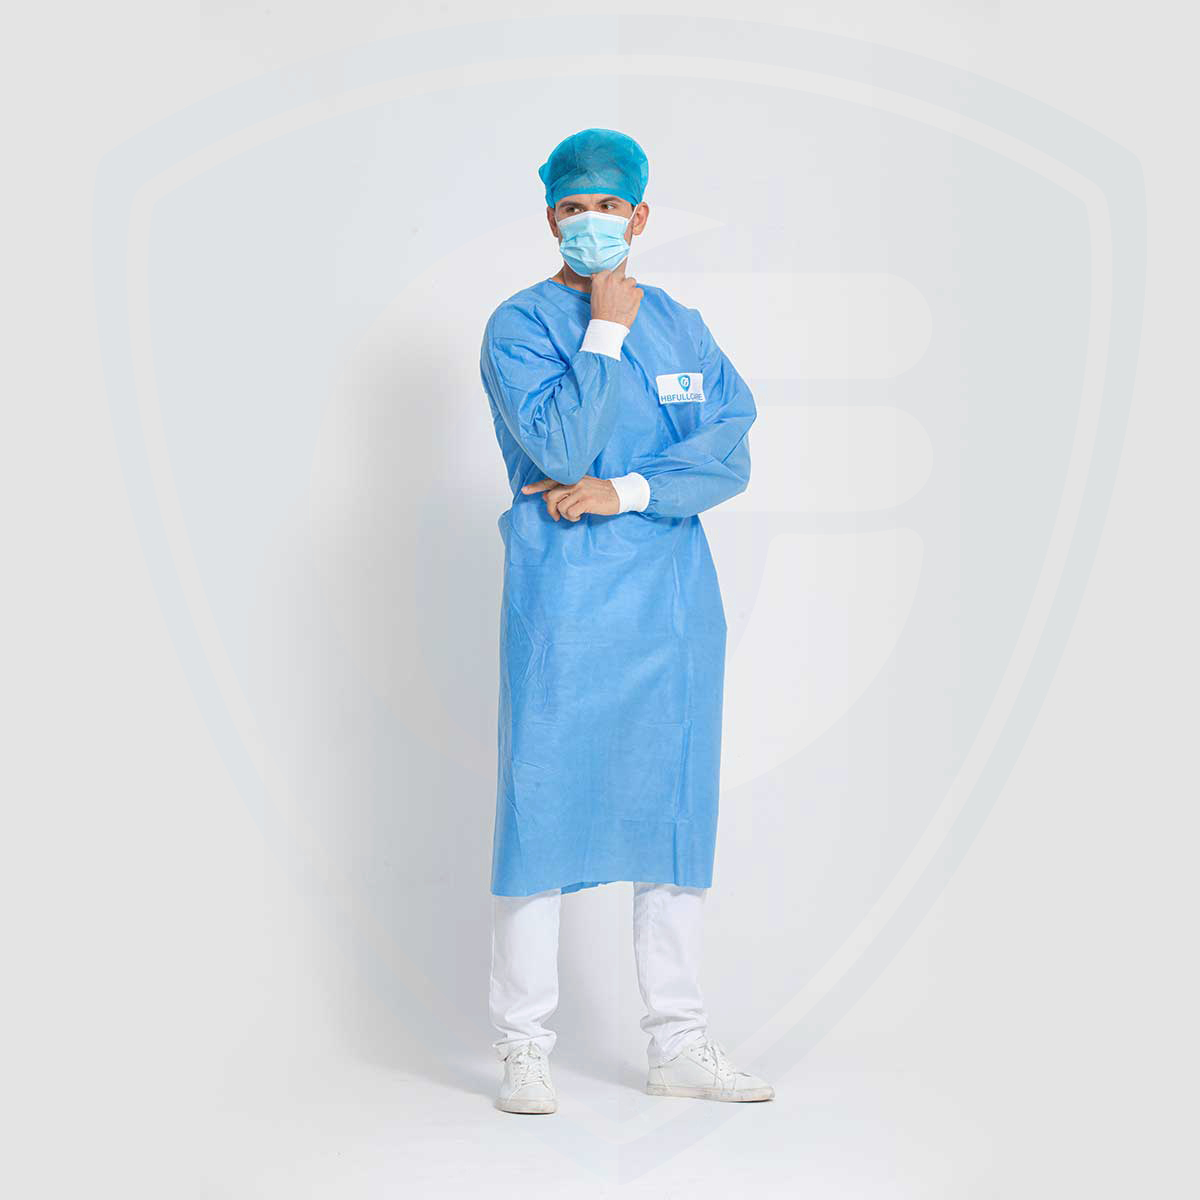 Blauer, autoklavierbarer, wasserdichter Einweg-OP-Kittel für Krankenhäuser/Kliniken AAMI PB70 Level3